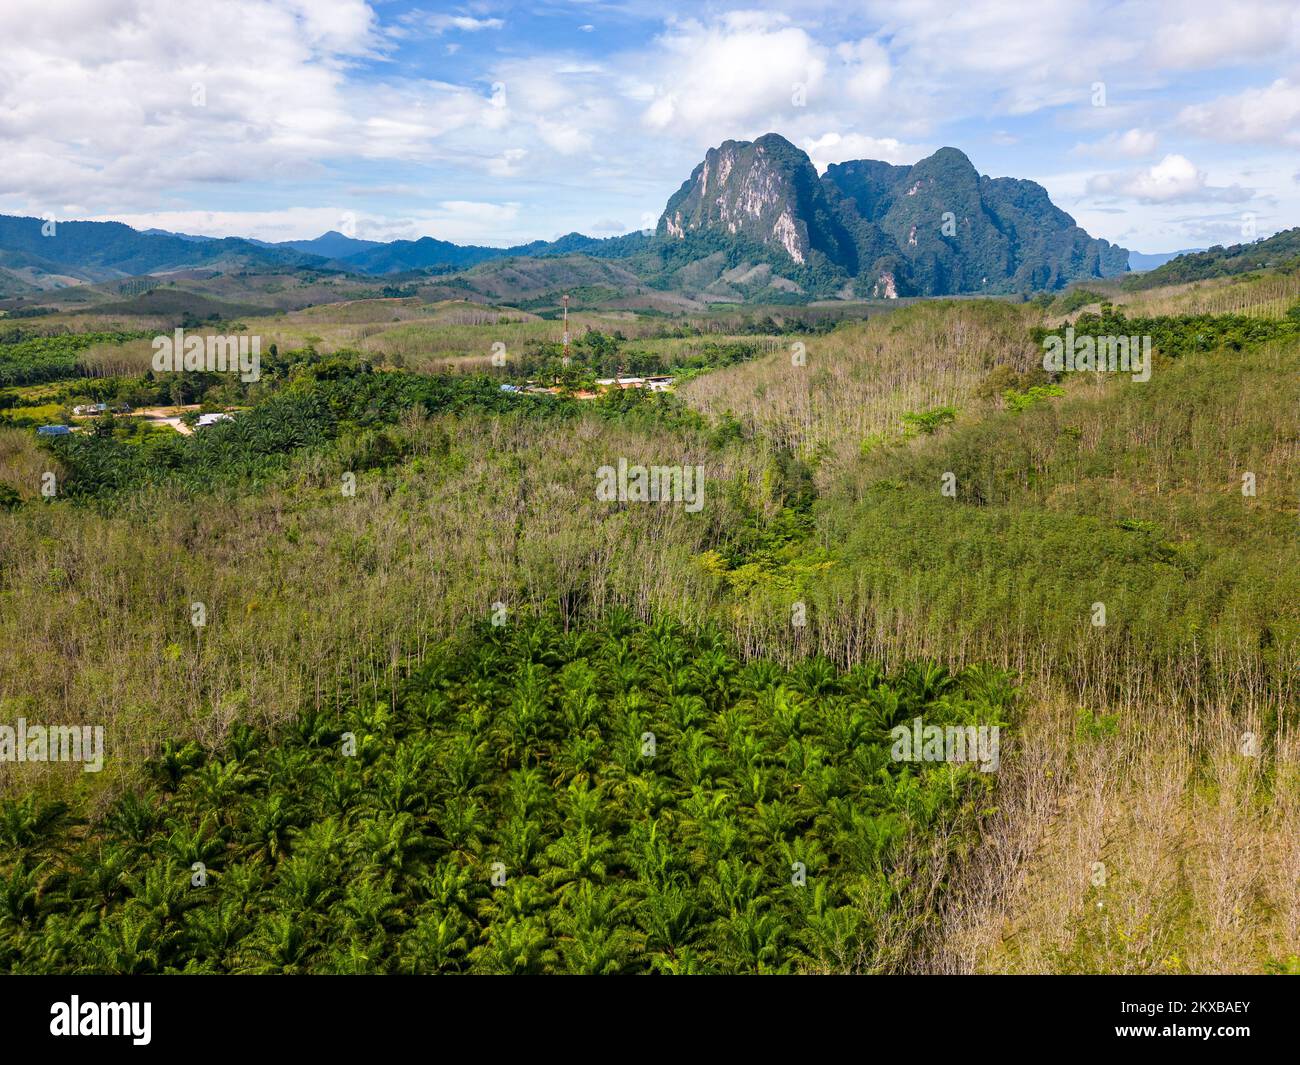 Vue aérienne sur le parc national de Khao Sok, Thaïlande. Jungle, palmiers et forêt tropicale. Montagnes en arrière-plan. Banque D'Images